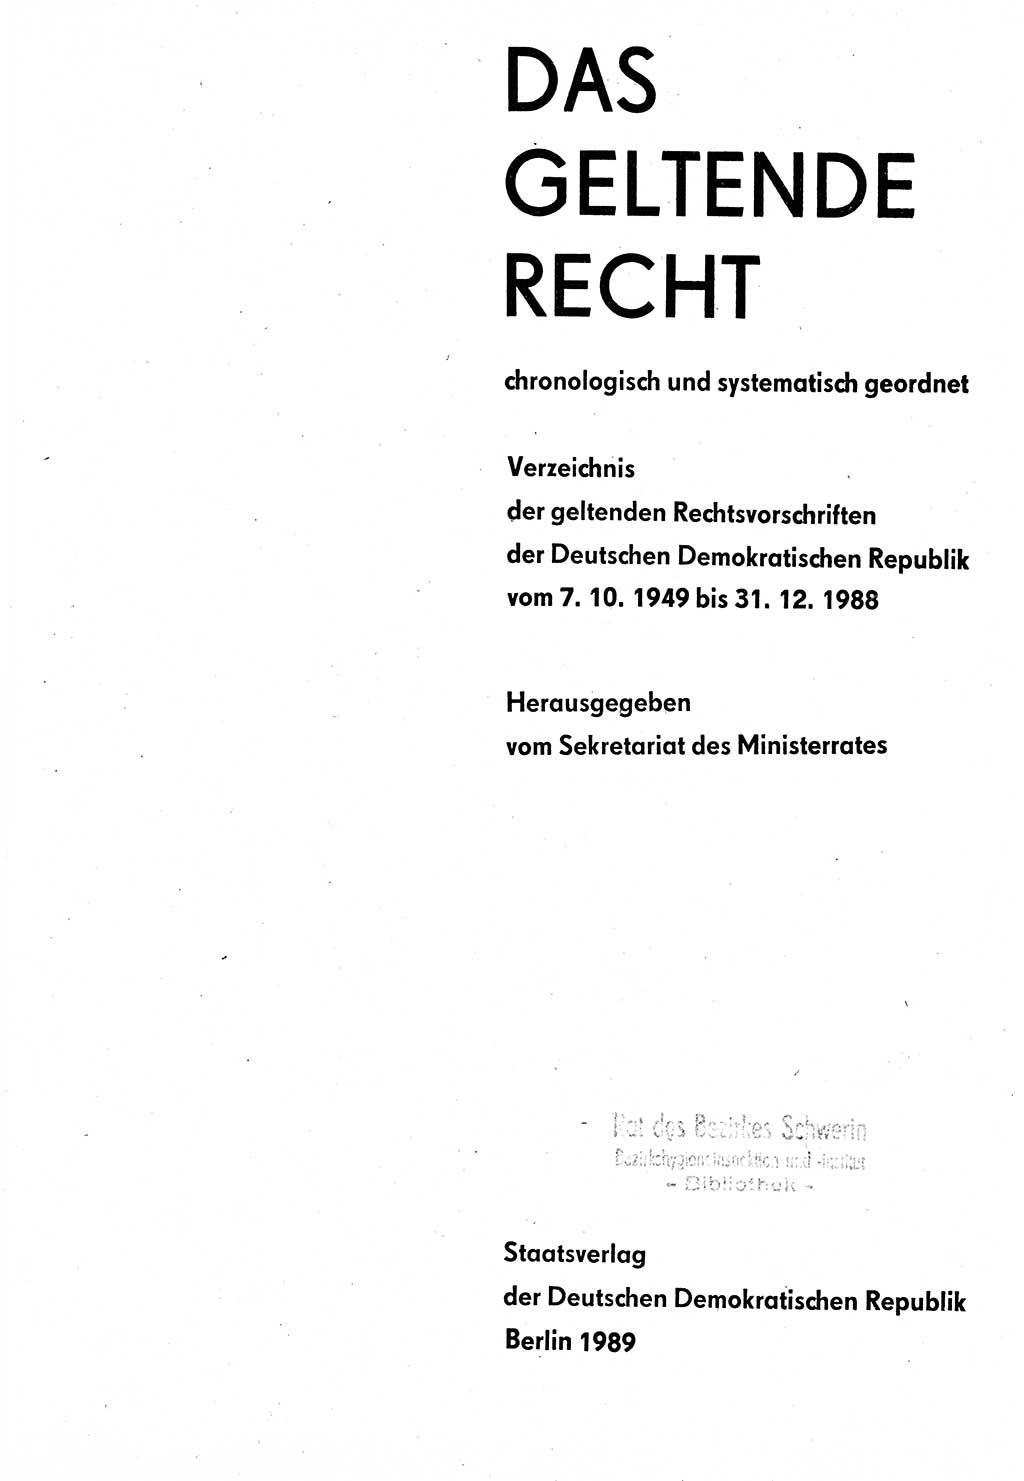 Das geltende Recht der Deutschen Demokratischen Republik (DDR) 1949-1988, Seite 3 (Gelt. R. DDR 1949-1988, S. 3)